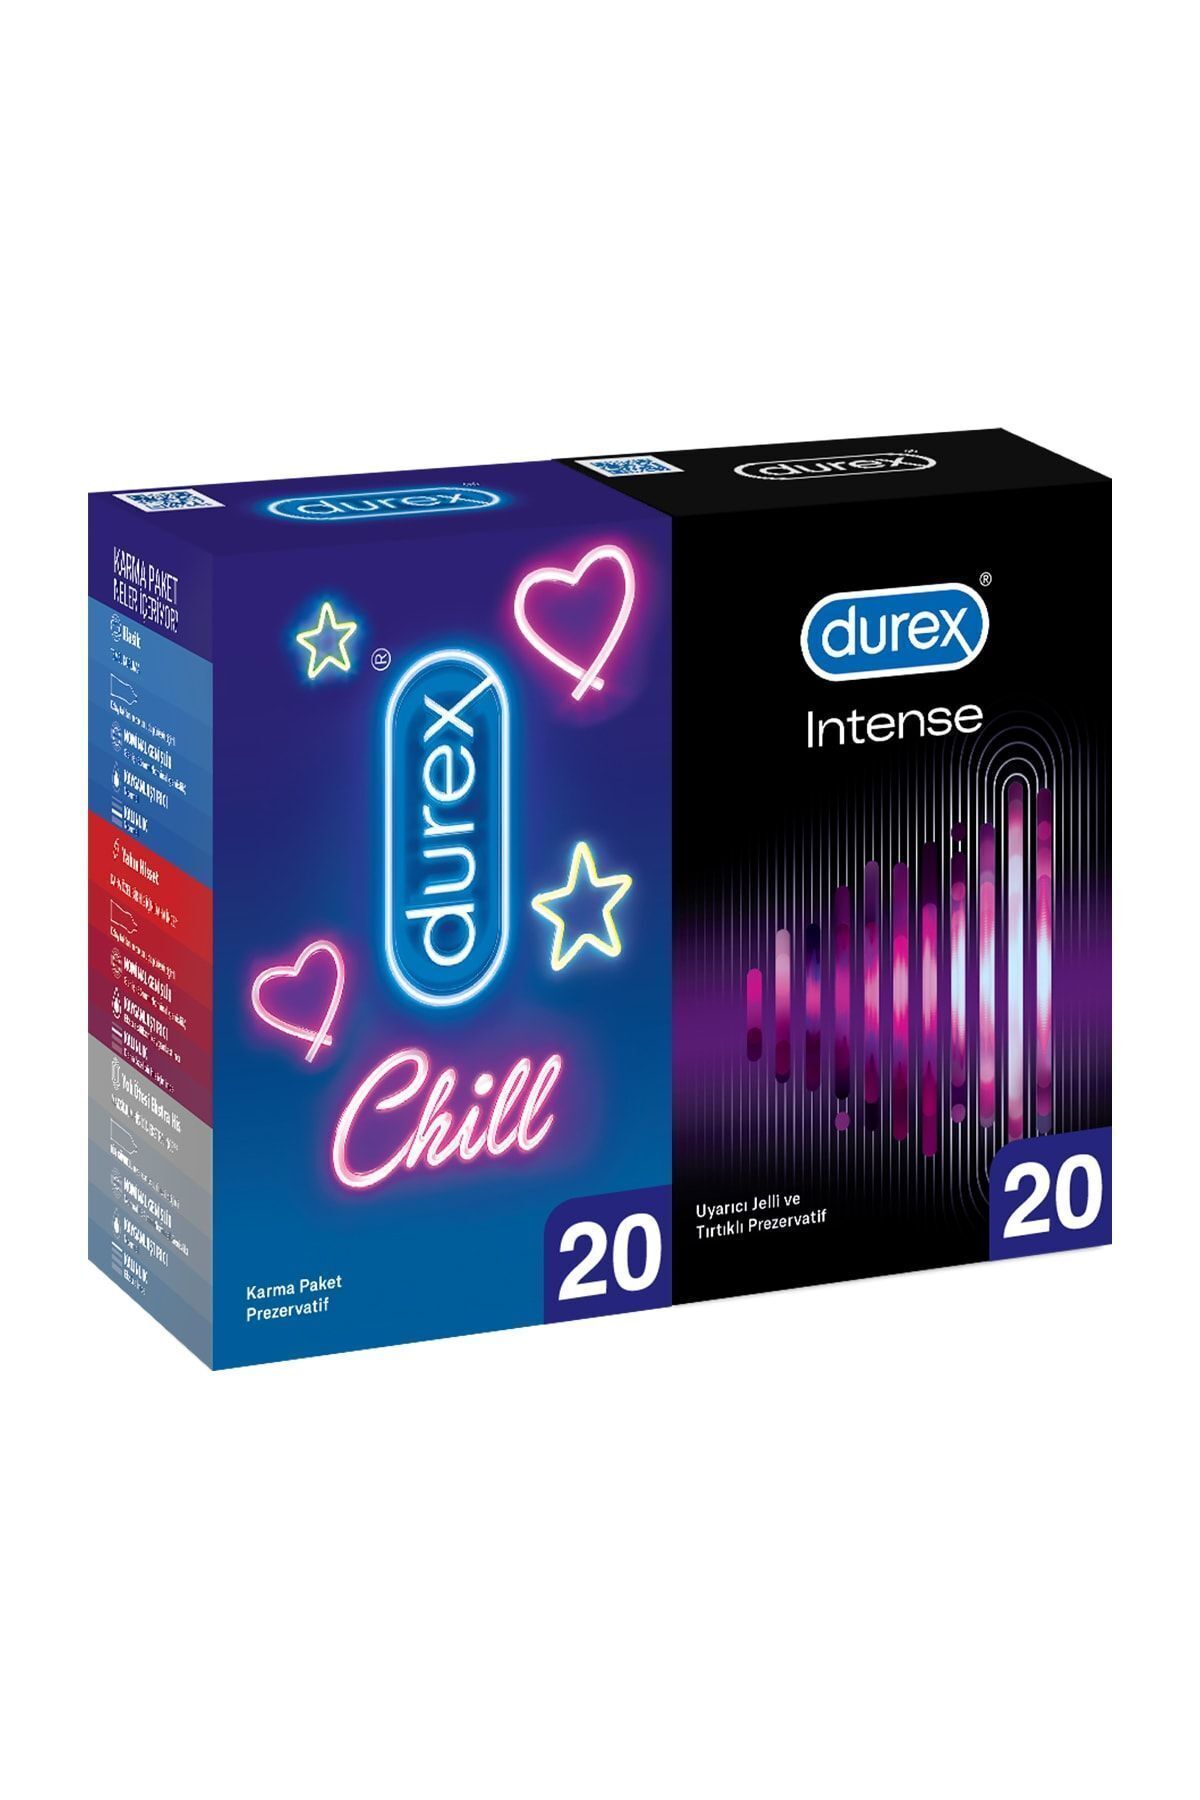 Durex Chill Karma Paket Prezervatif 20’li + Durex Intense 20'li